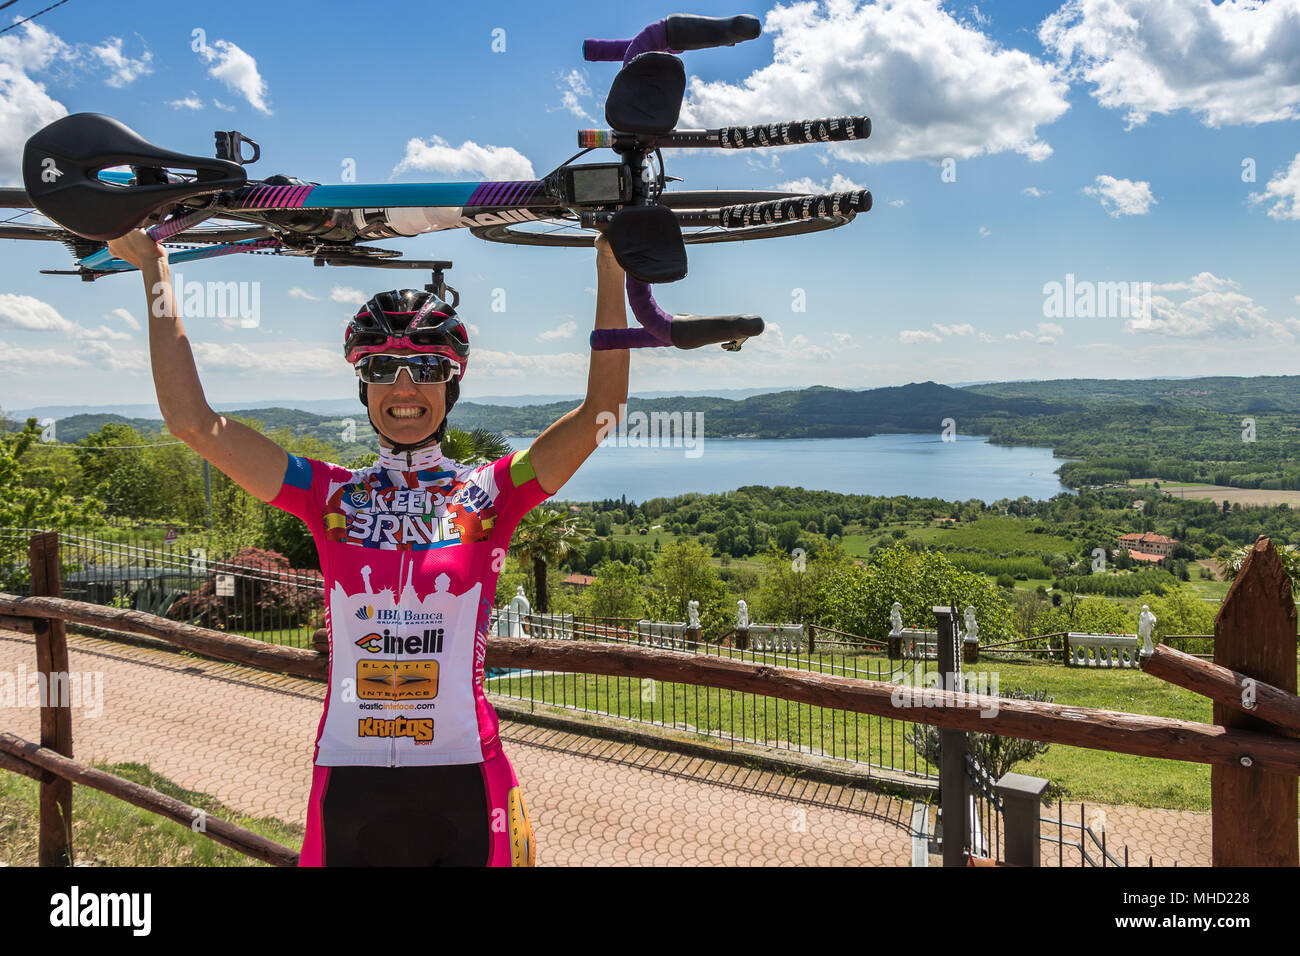 Paola Gianotti ##iorispettoilciclista ilgirodipaola Halten mutige Italienische weibliche Radfahrer rund um die Welt geradelt Guinness Weltrekordhalter tragen Stockfoto